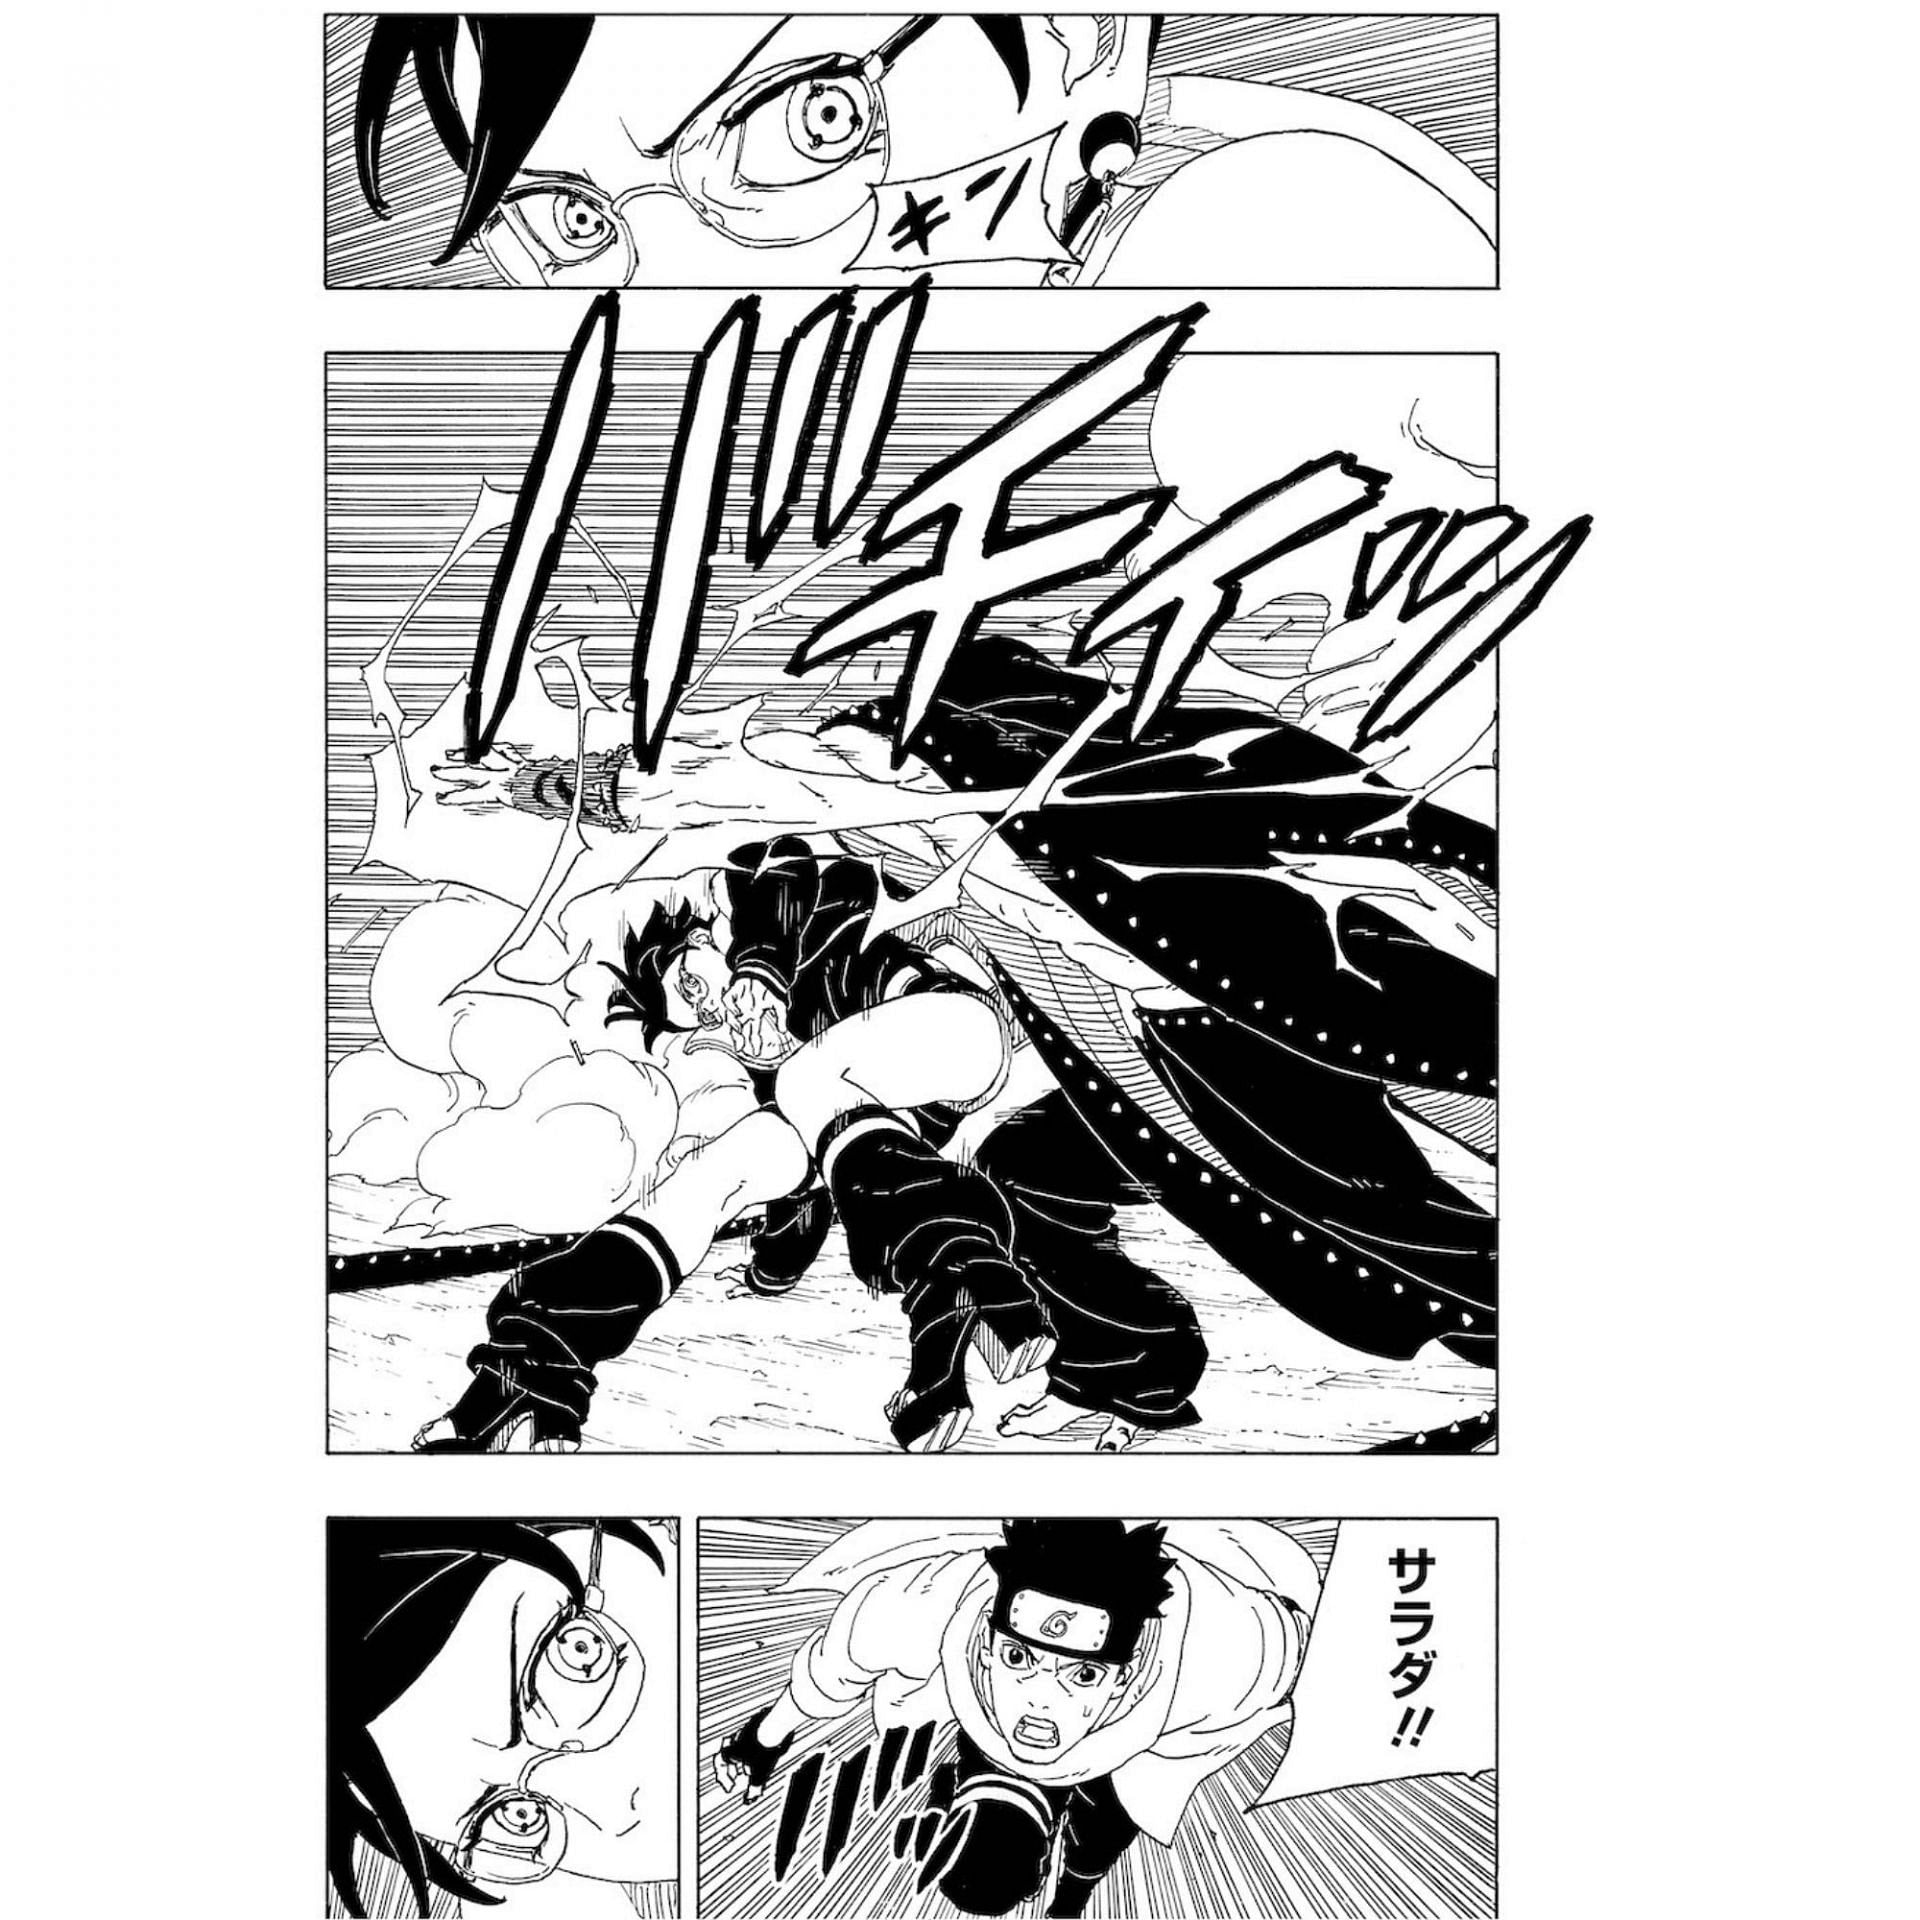 Hidari attacking Sarada Uchiha in the manga preview (Image via Shueisha)